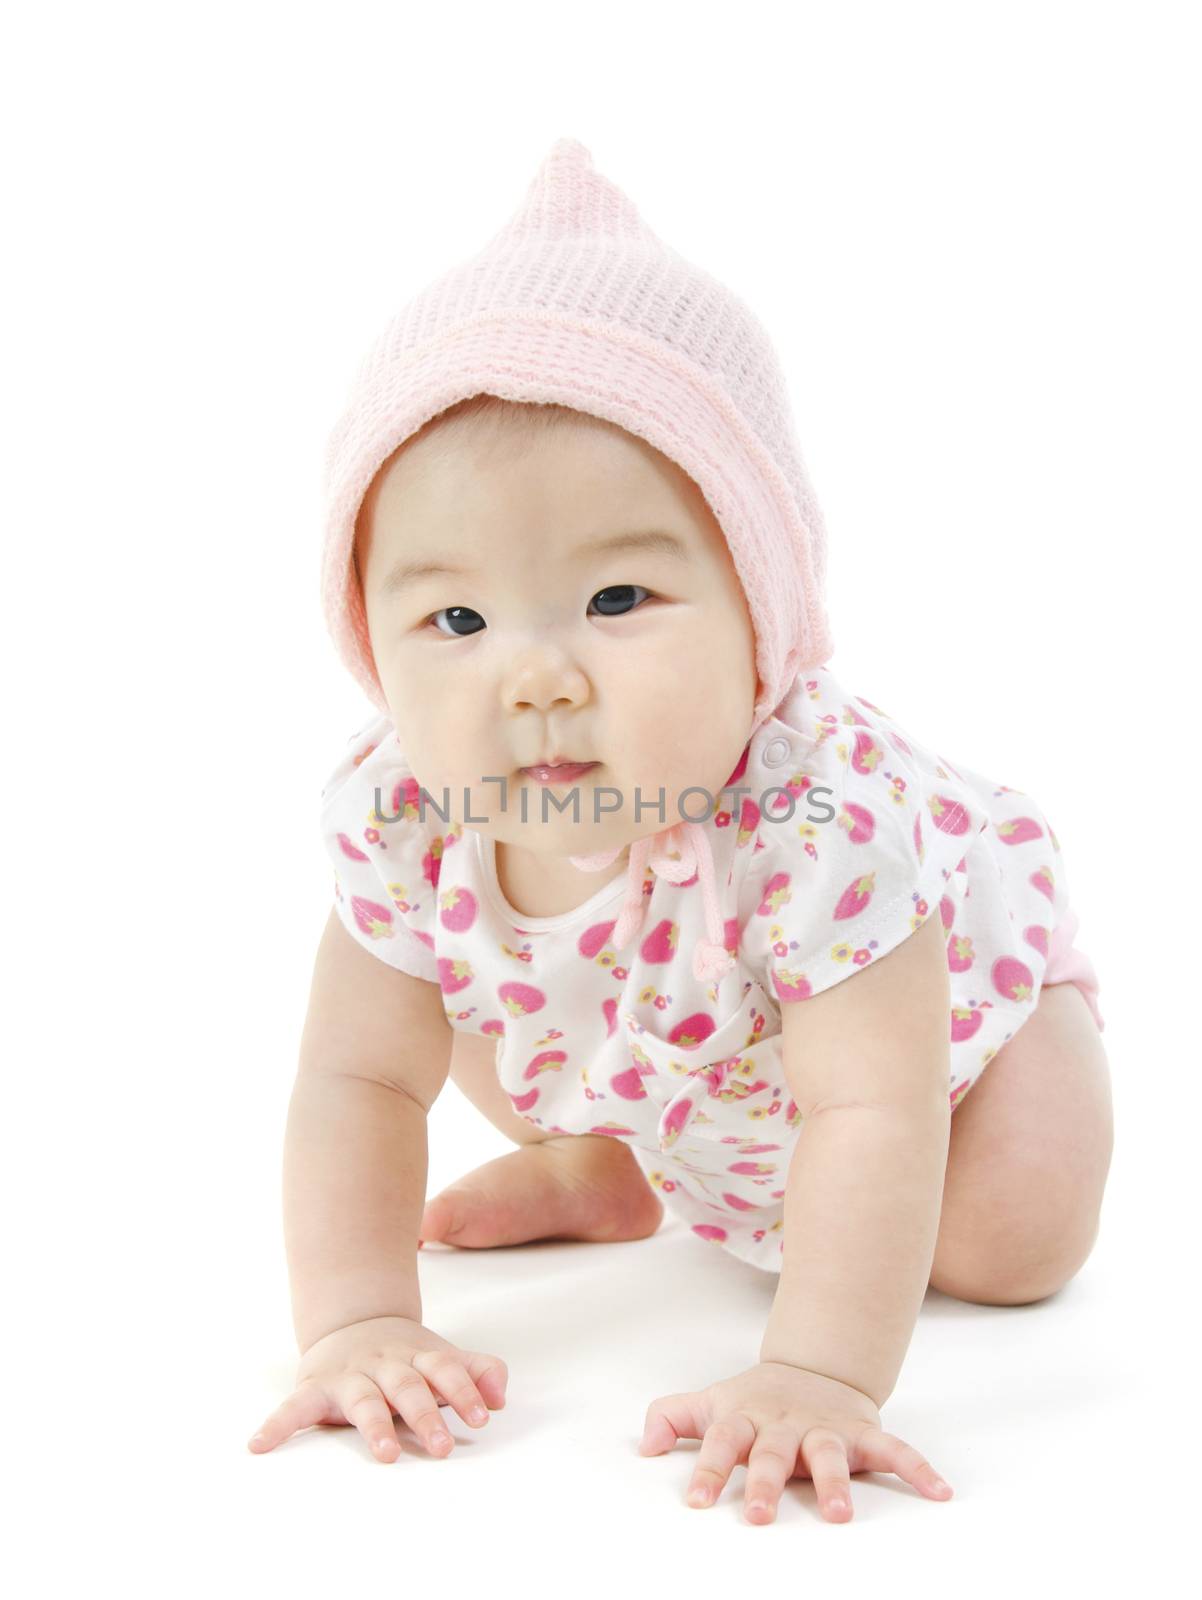 Asian baby girl crawling by szefei